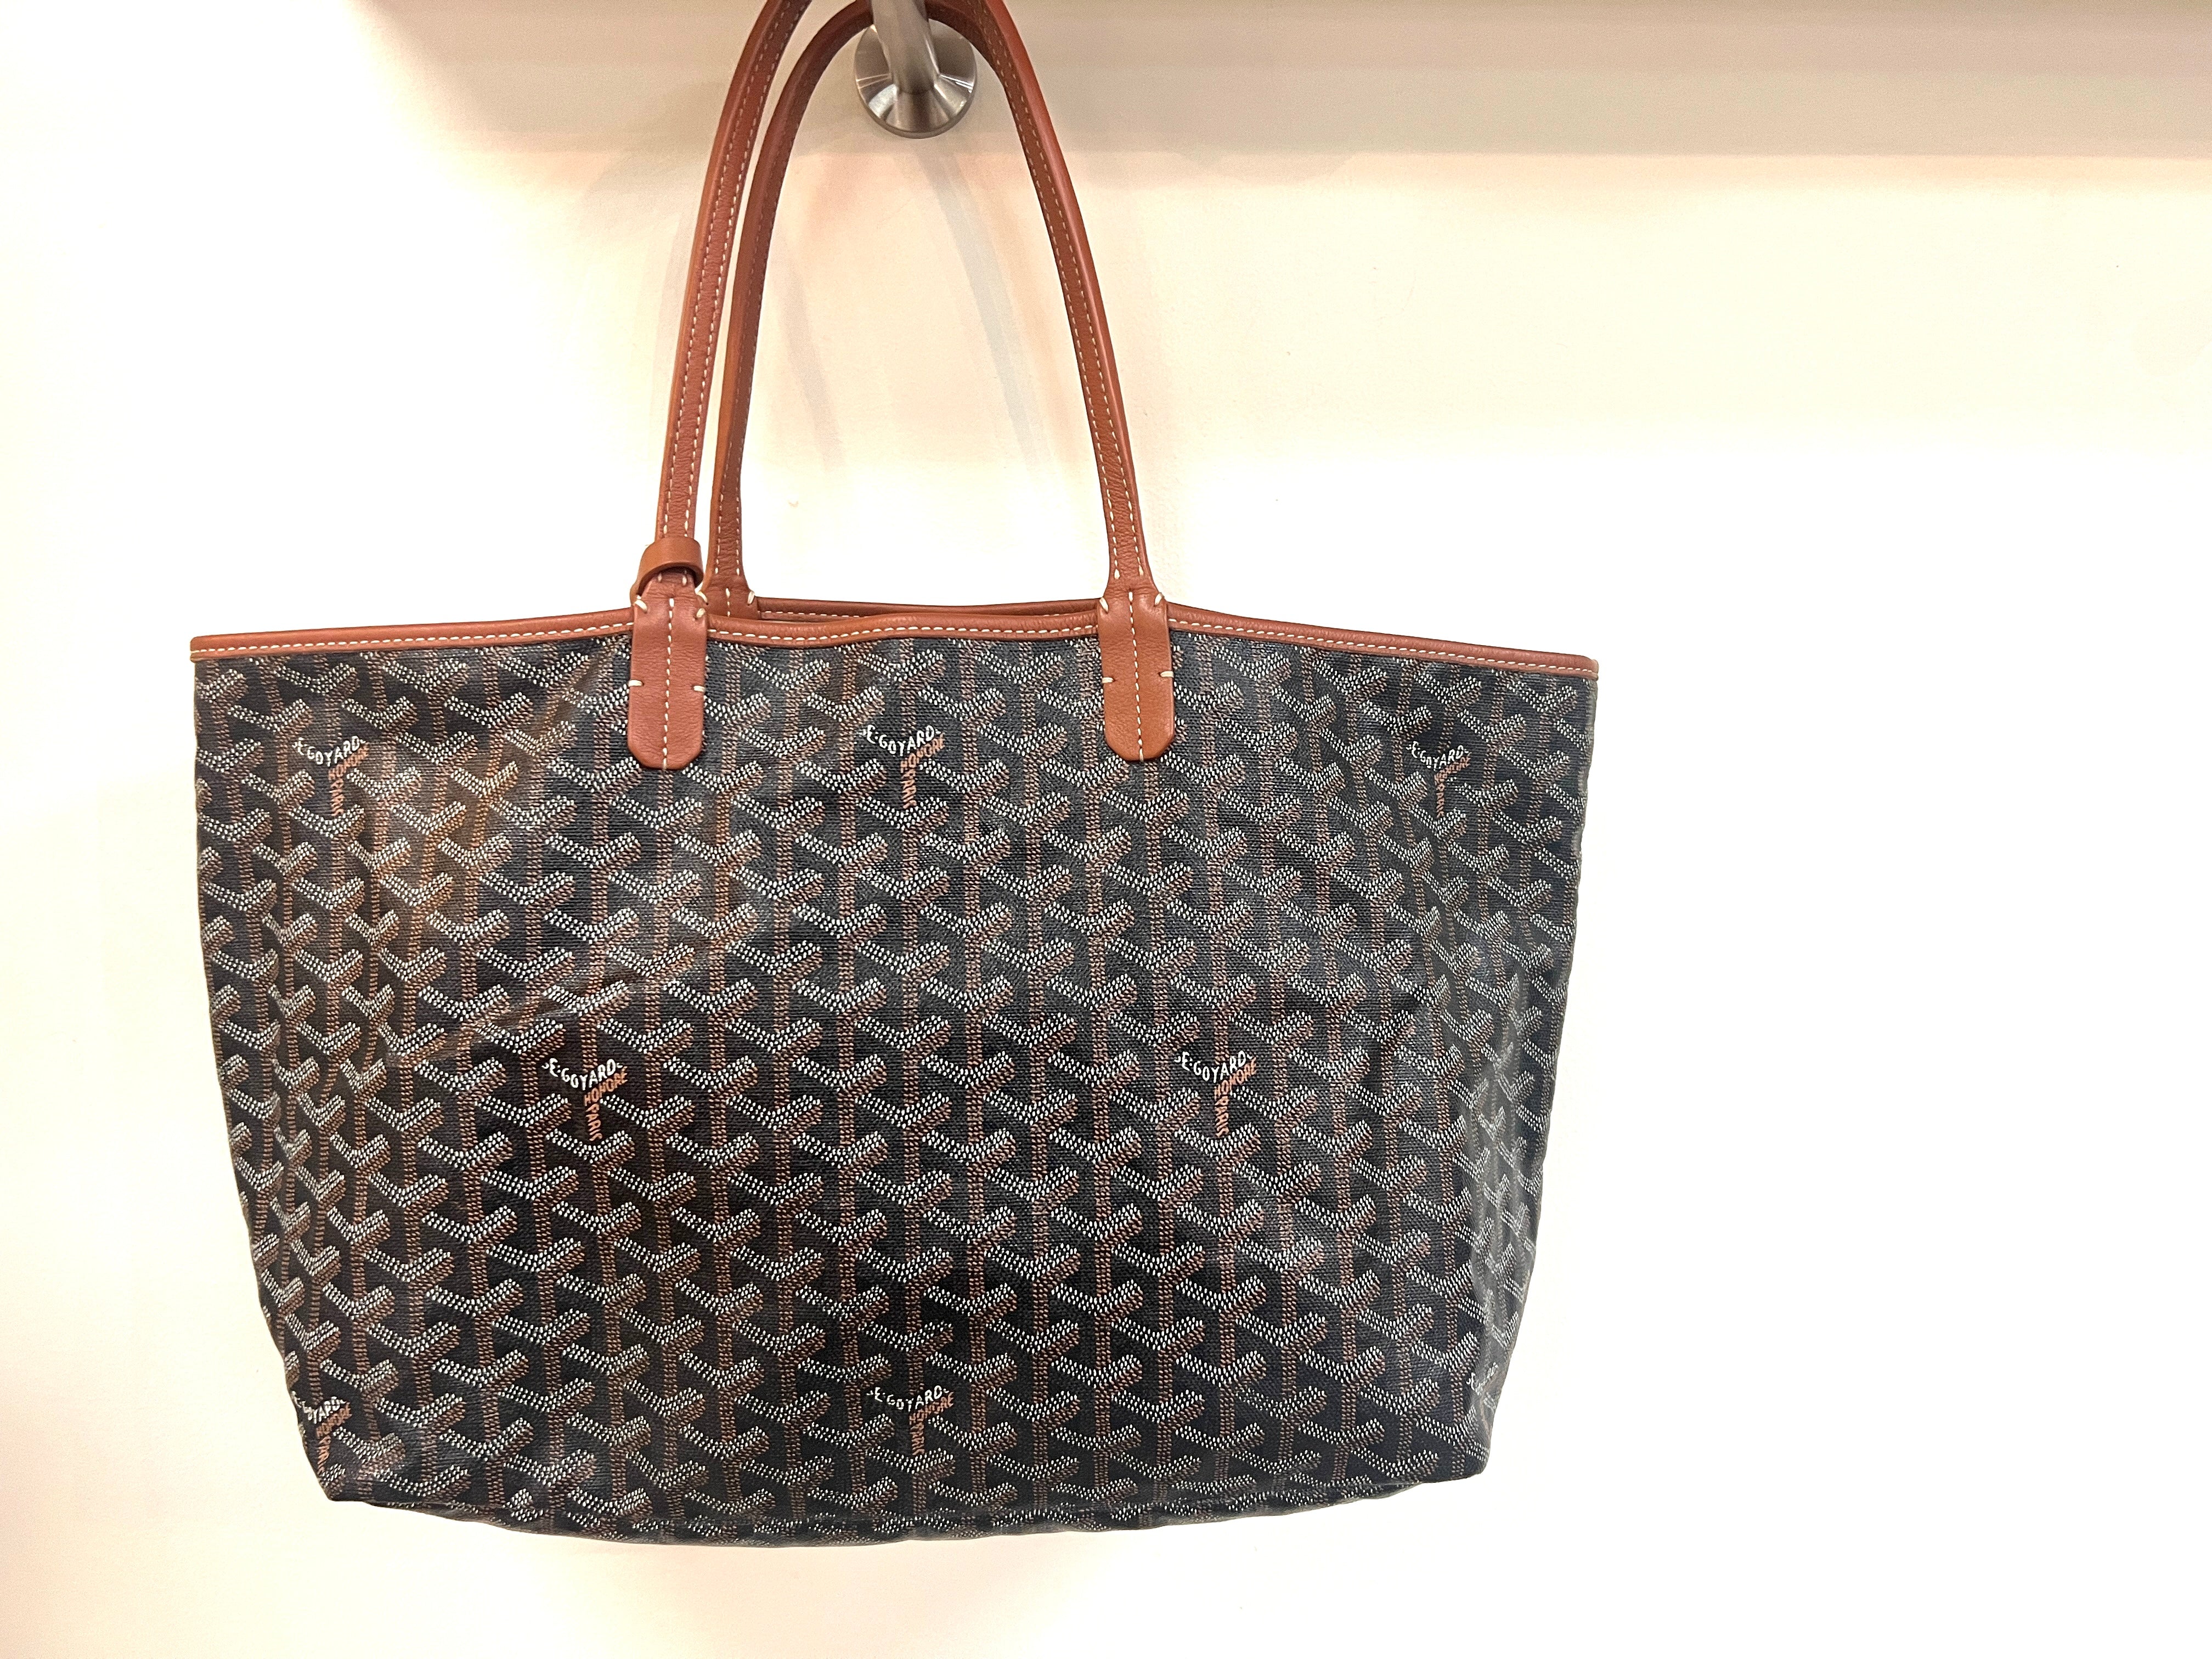 Chanel 19 Shopping Tote - Brown Totes, Handbags - CHA960097